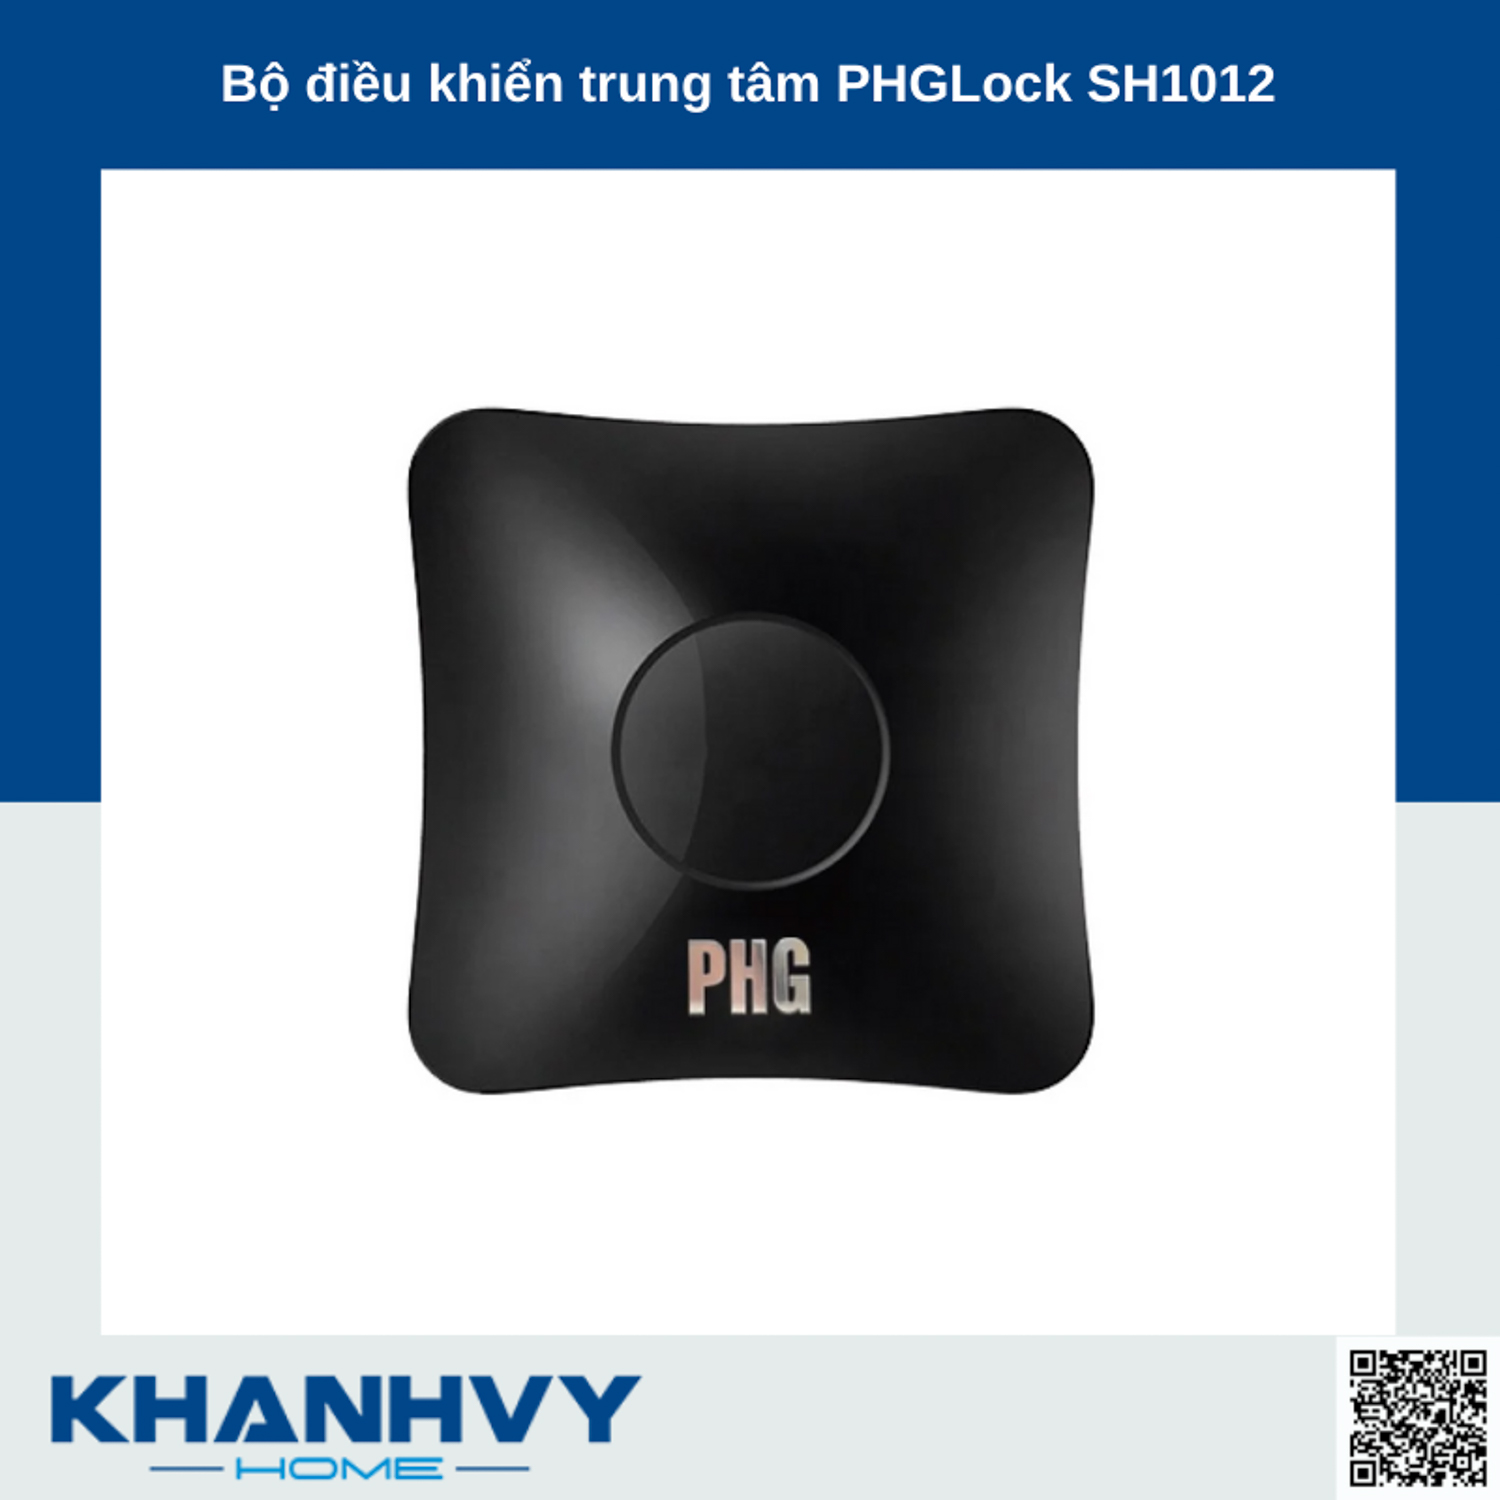 Bộ điều khiển trung tâm PHGLock SH1012 được thiết kế hiện đại, dùng để điều khiển các thiết bị điện tử trong nhà thông minh